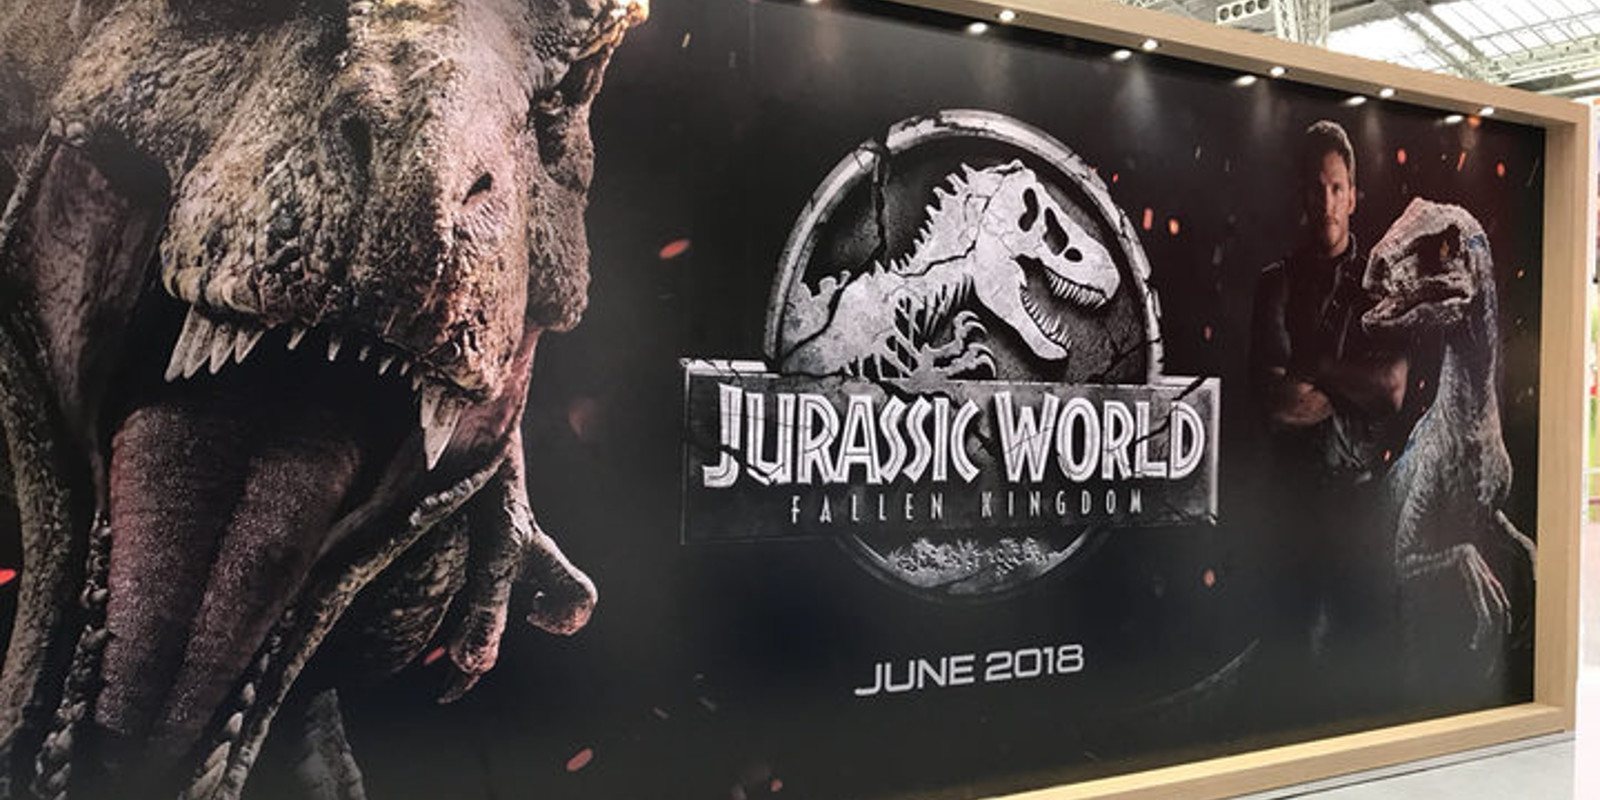 La Jurassic World Experience llega a España: Una experiencia que nadie querrá perderse